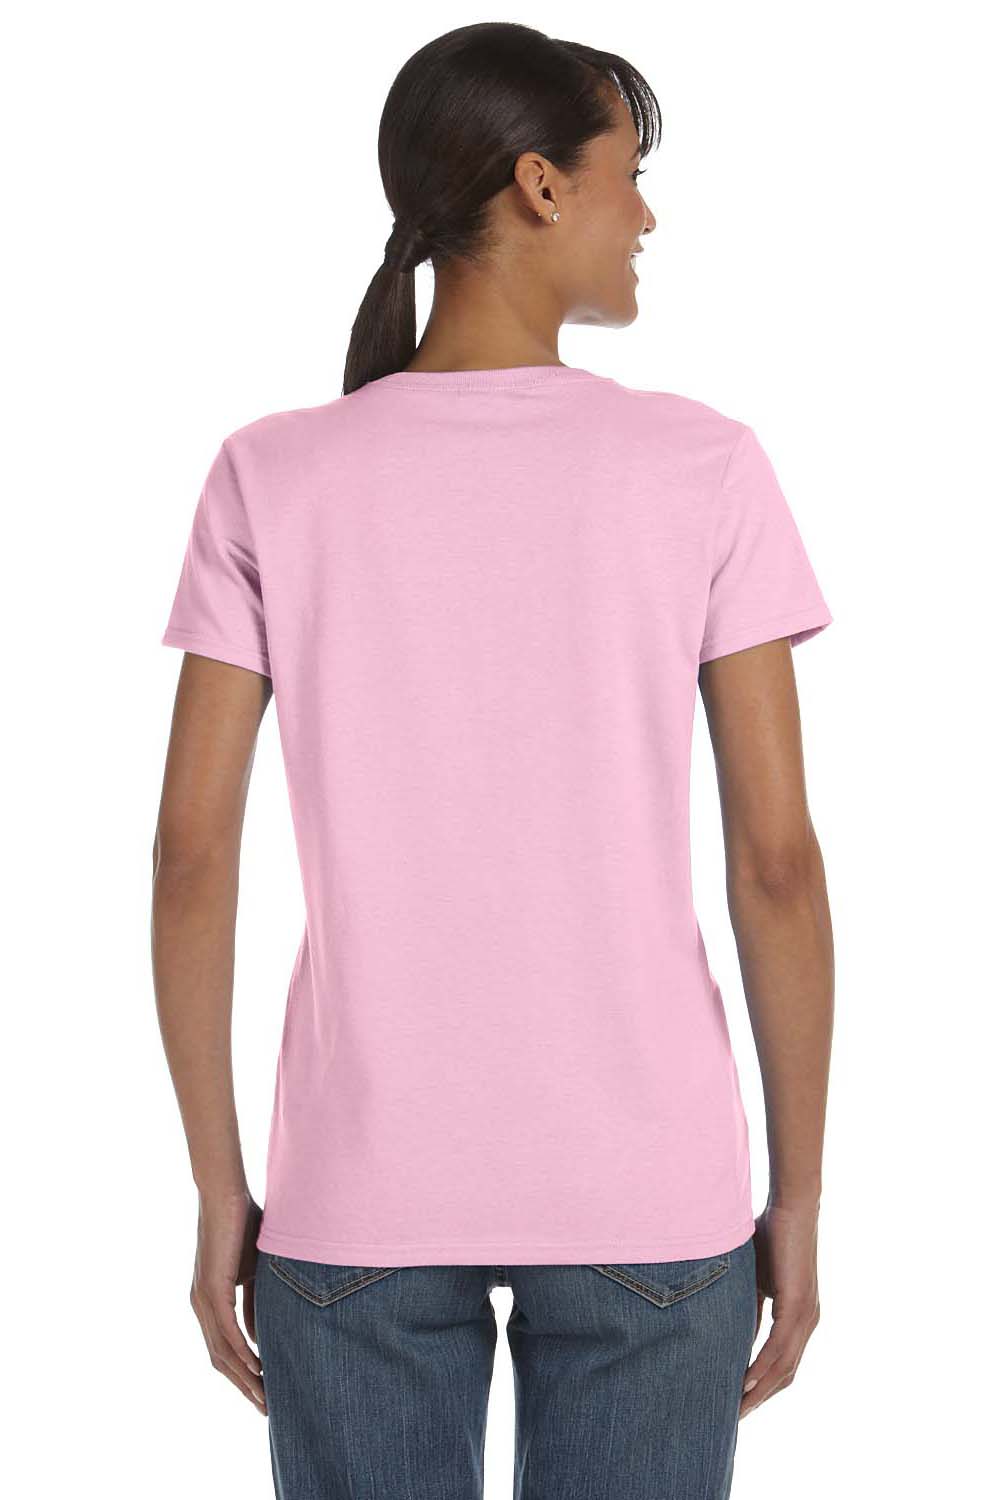 Gildan G500L Womens Short Sleeve Crewneck T-Shirt Light Pink Back